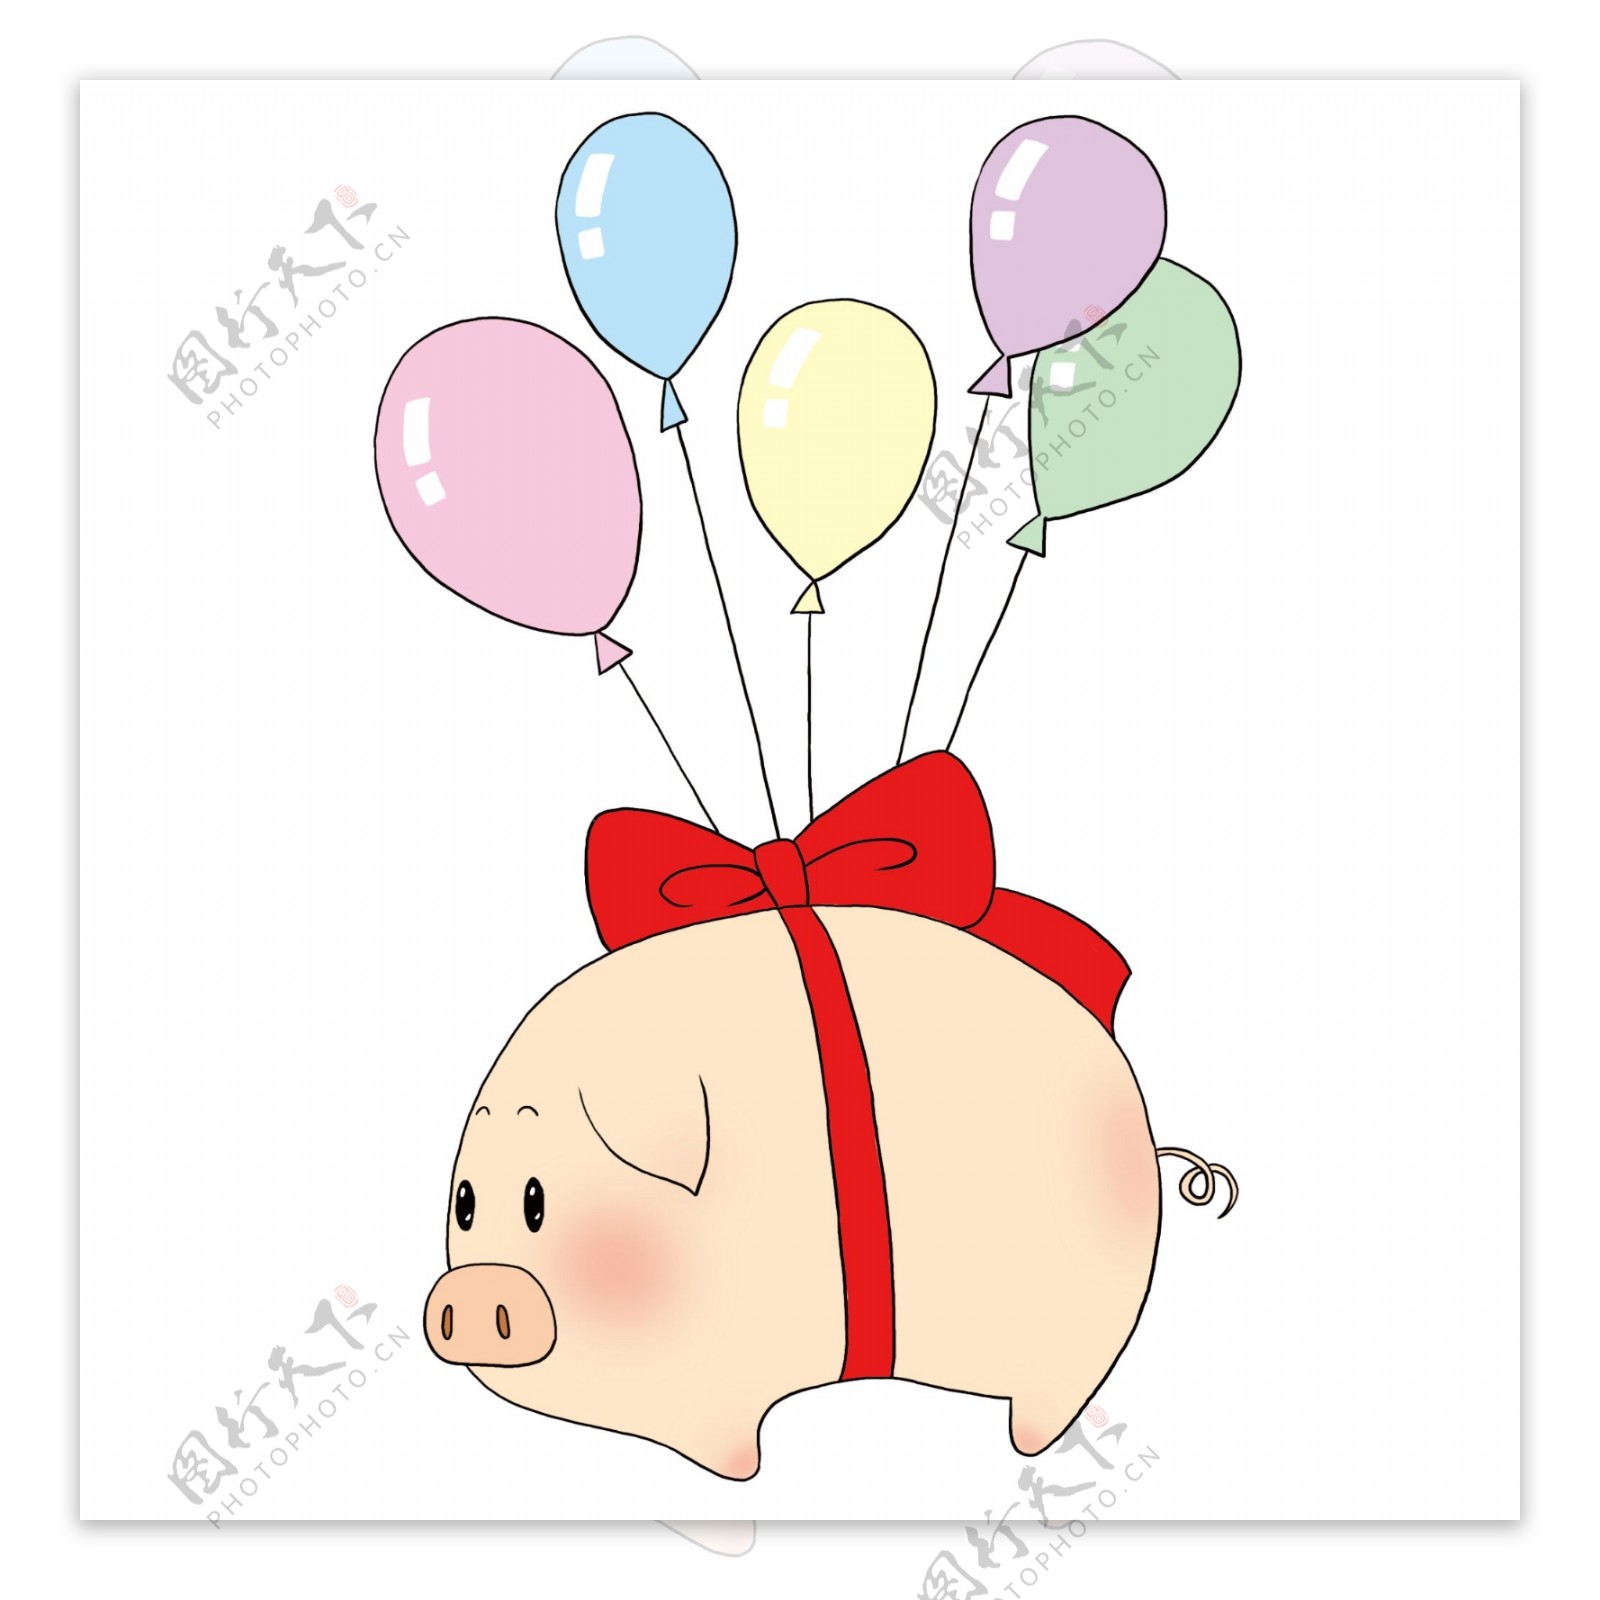 漂浮的被气球挂起的小猪